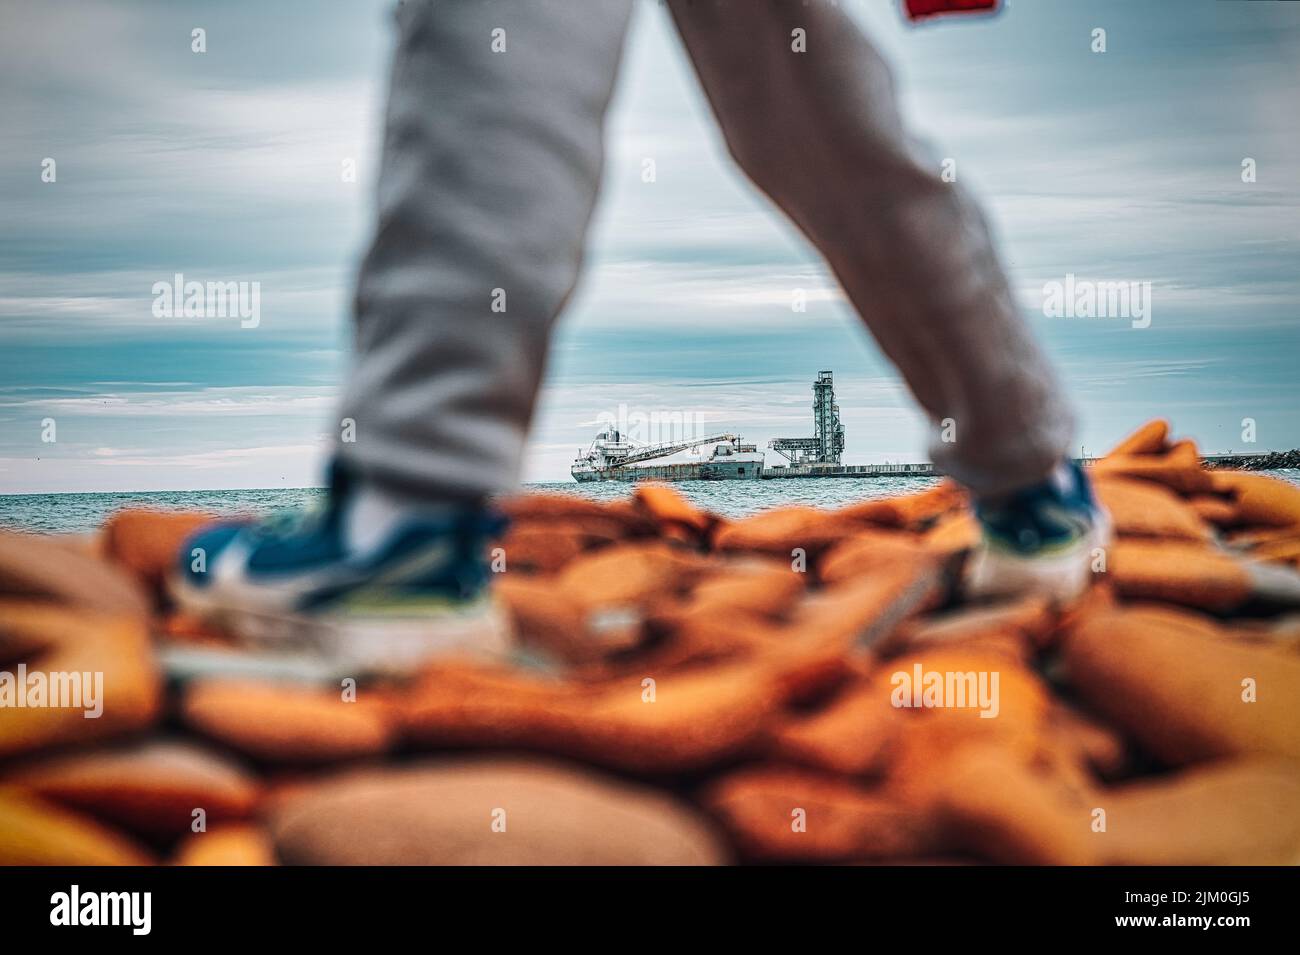 Un primo piano di gambe che camminano su una spiaggia rocciosa con ciottoli rossi in una giornata colma Foto Stock